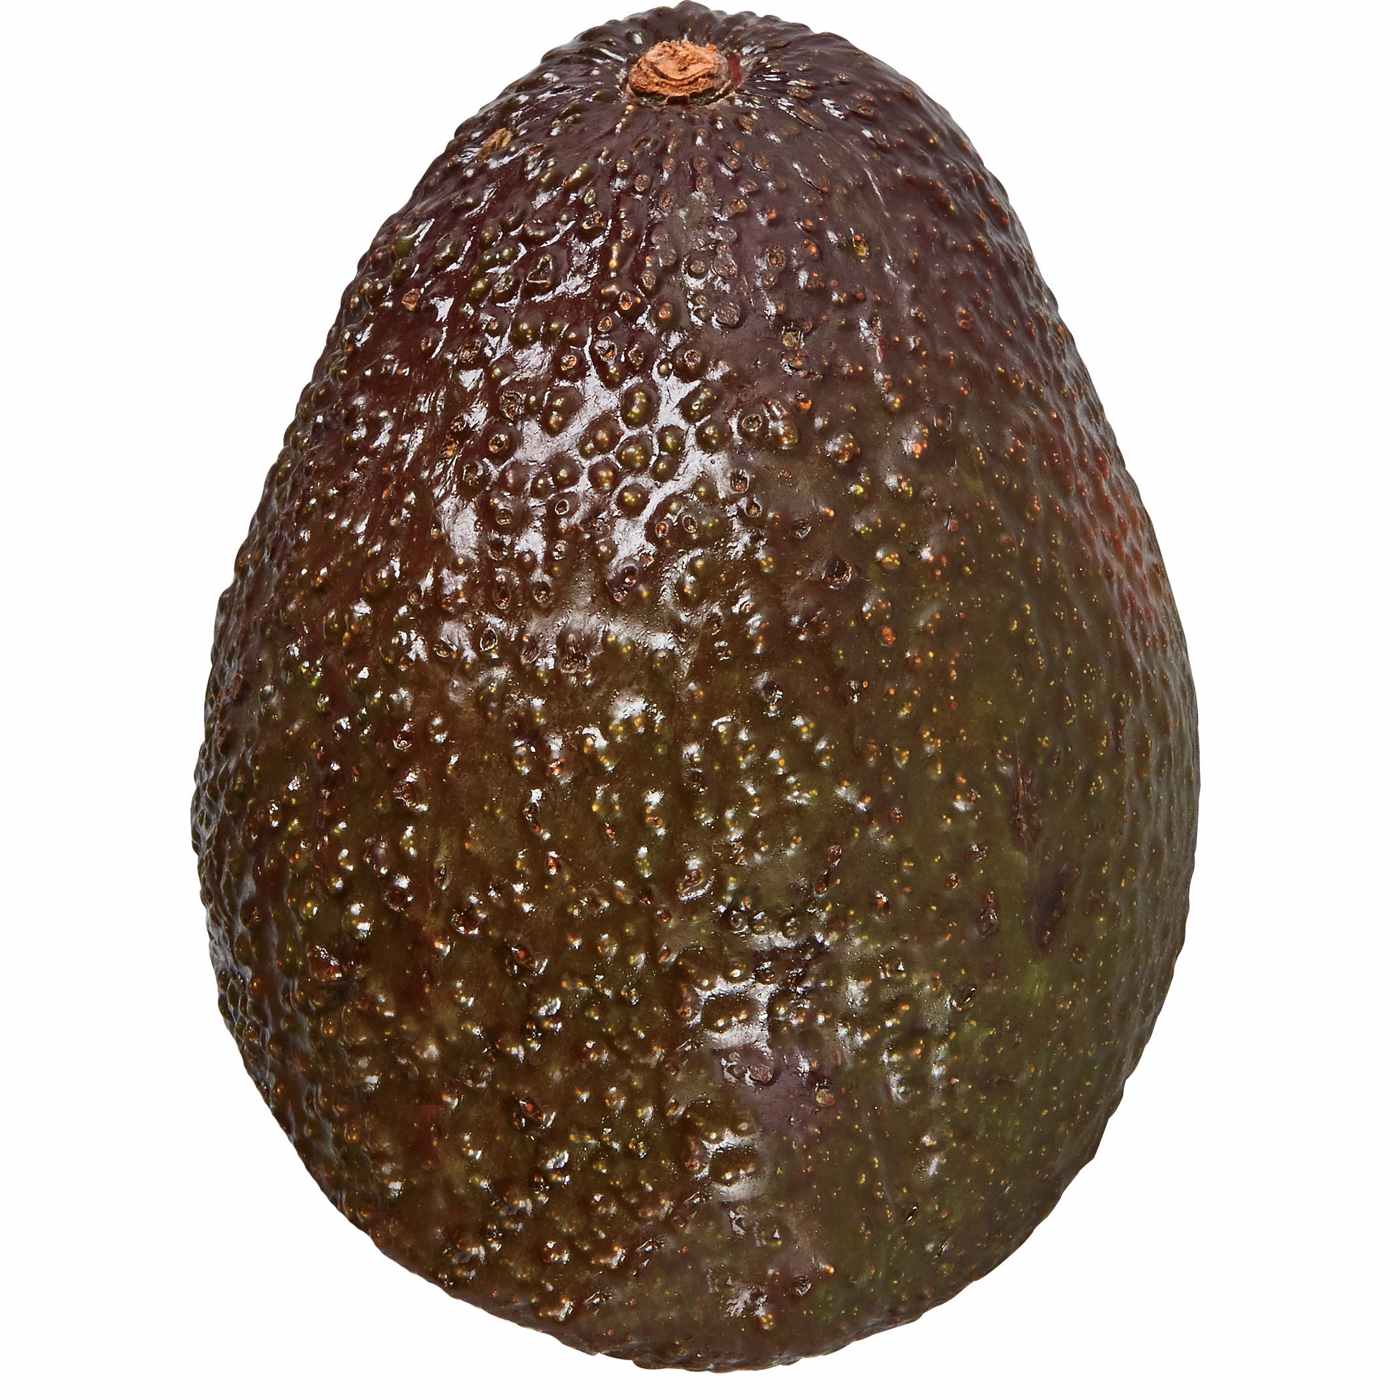 Fresh Jumbo Hass Avocado; image 2 of 3